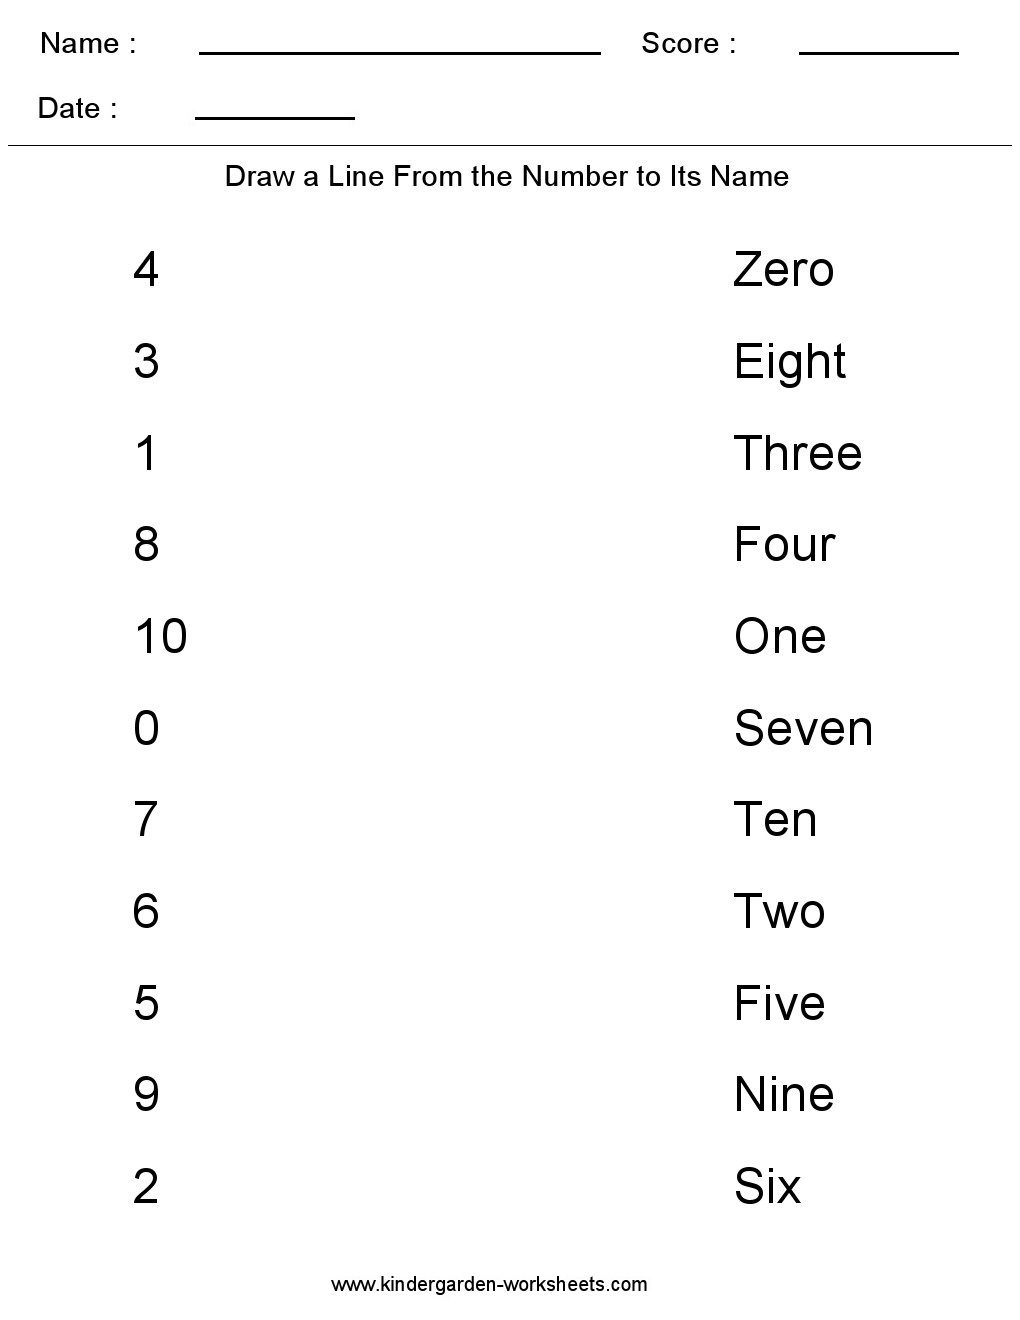 Maths Number Namesrksheet Kindergartenrksheets Match The Numbers